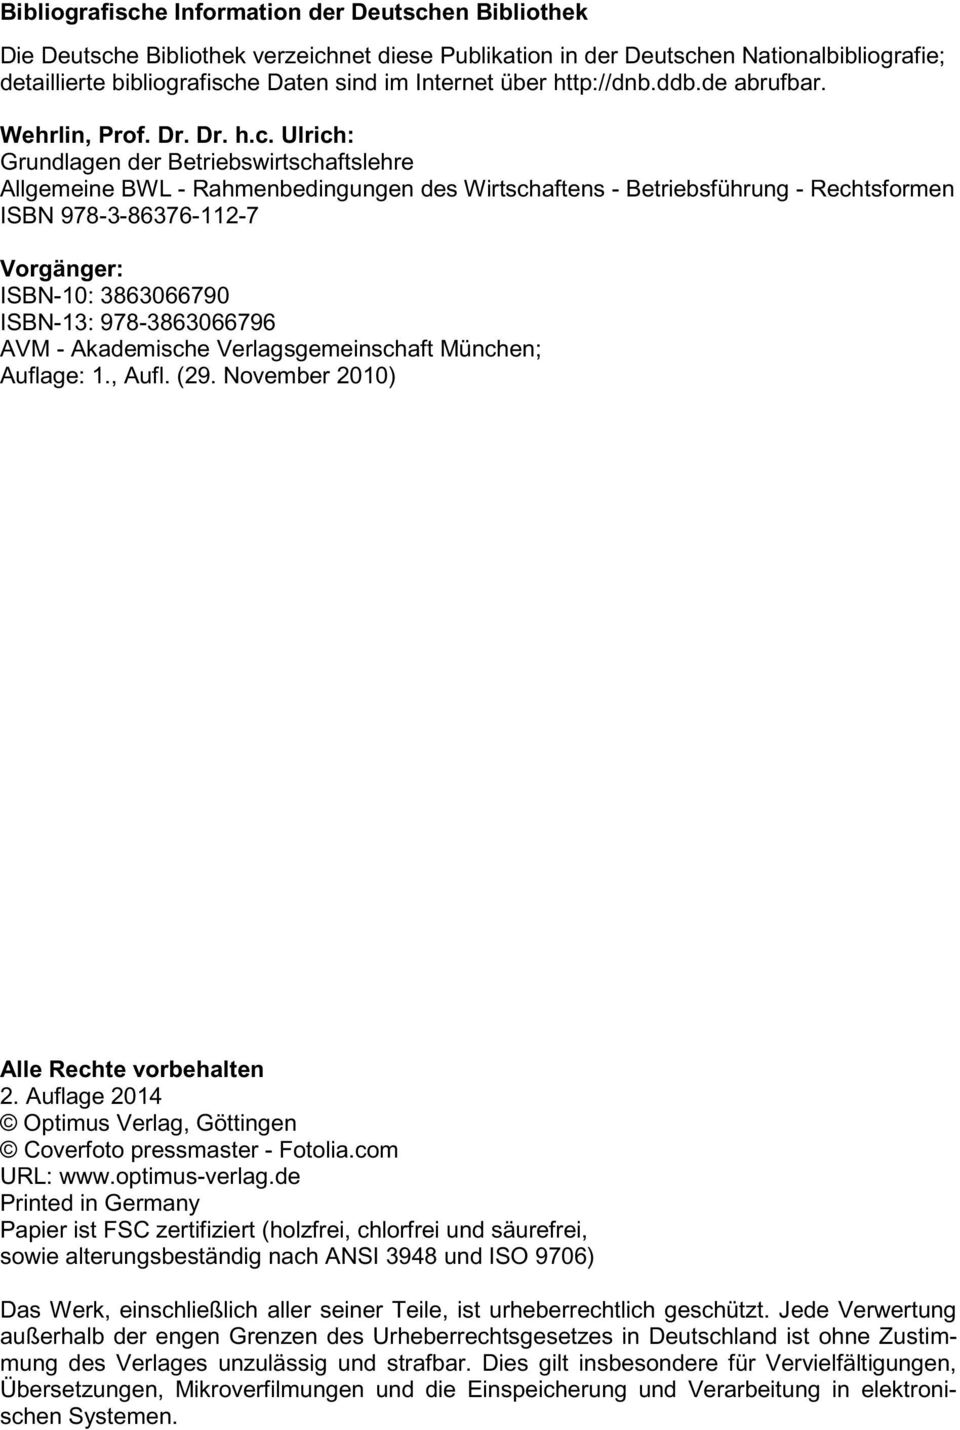 Ulrich: Grundlagen der Betriebswirtschaftslehre Allgemeine BWL - Rahmenbedingungen des Wirtschaftens - Betriebsführung - Rechtsformen ISBN 978-3-86376-112-7 Vorgänger: ISBN-10: 3863066790 ISBN-13: